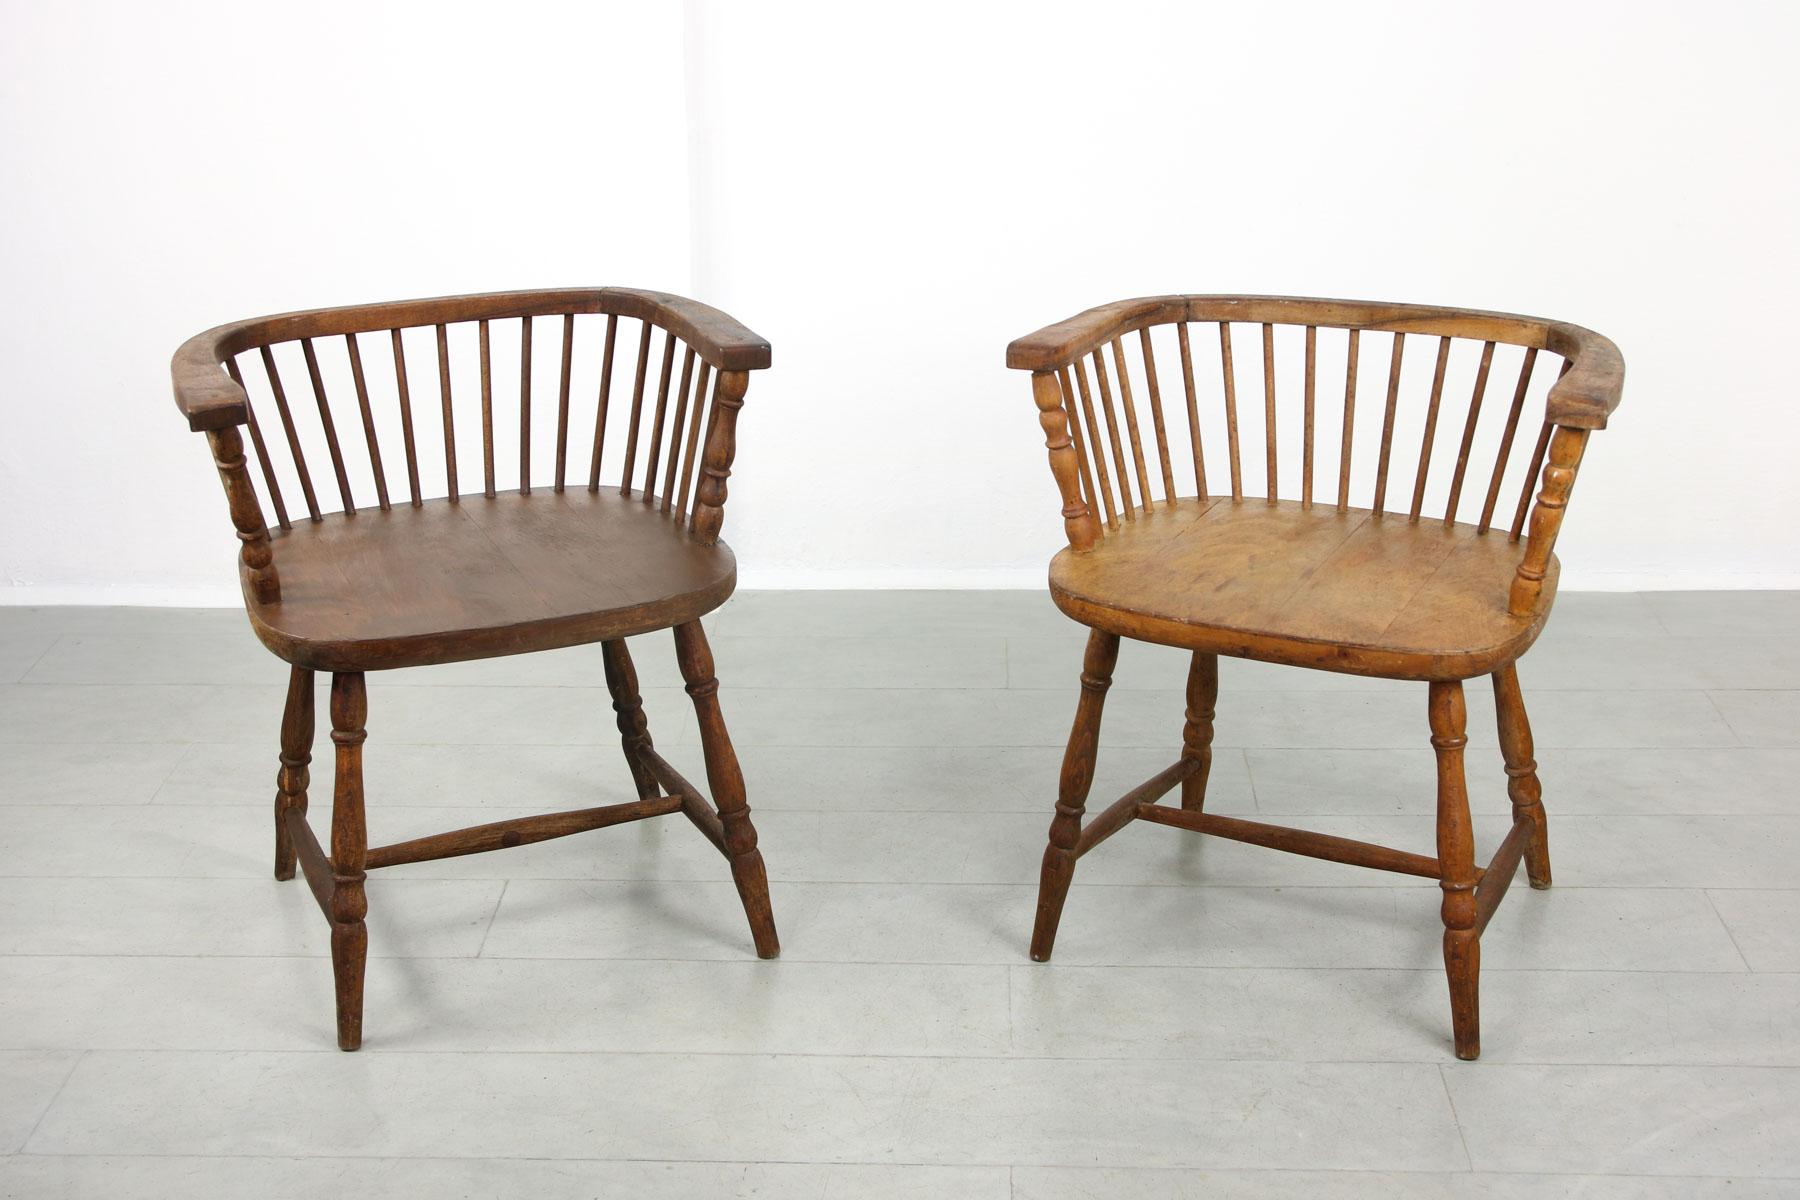 Seltene Windsor-Stühle mit niedriger Rückenlehne aus dem 19. Jahrhundert, die als Requisiten in einem alten Theater gefunden wurden. Identisches Modell, ein Stuhl in einem helleren und ein anderer in einem dunkleren Farbton (Walnussholz). Sitzhöhe: